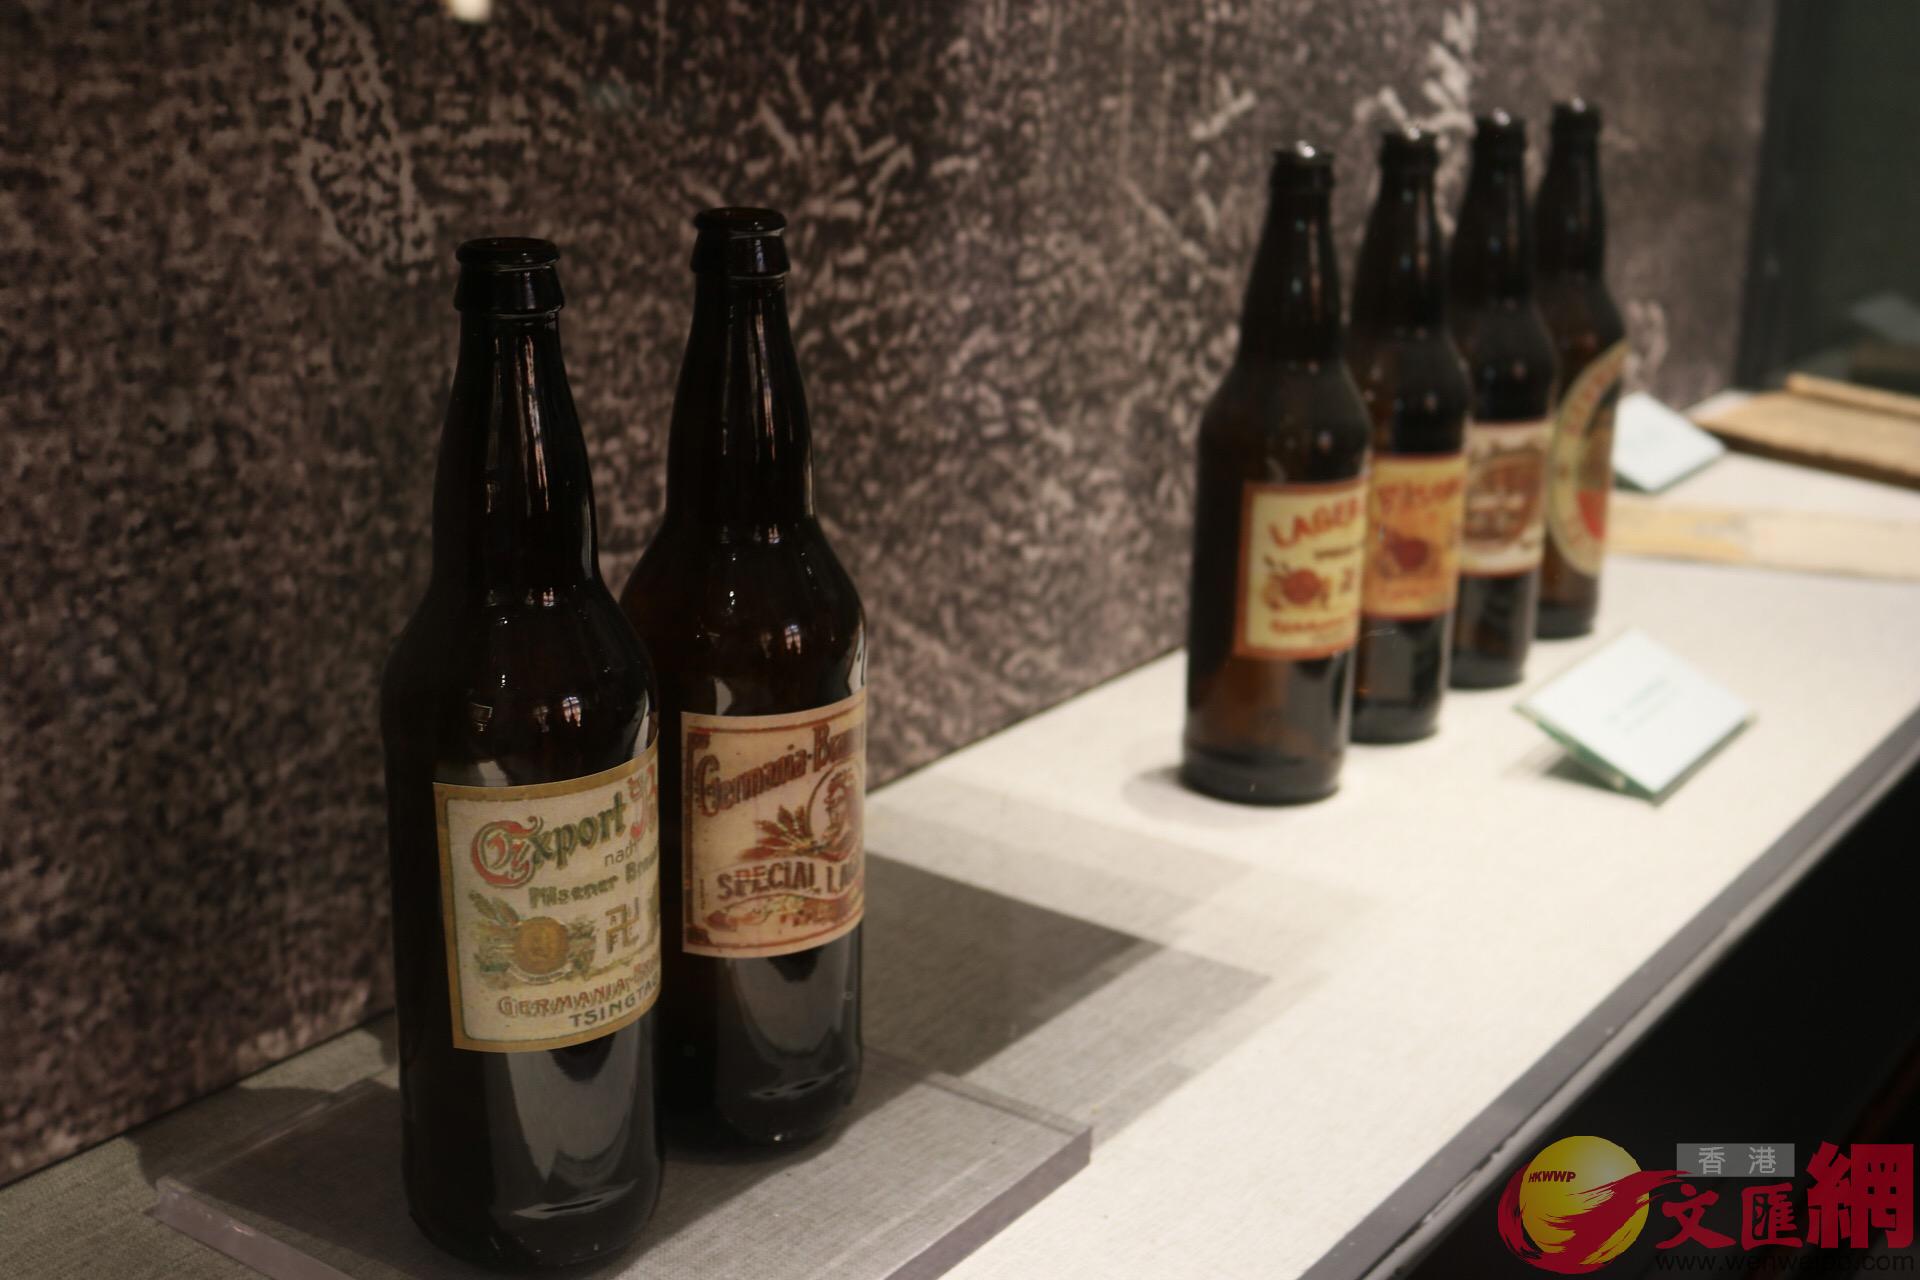 青島啤酒博物館內展品 